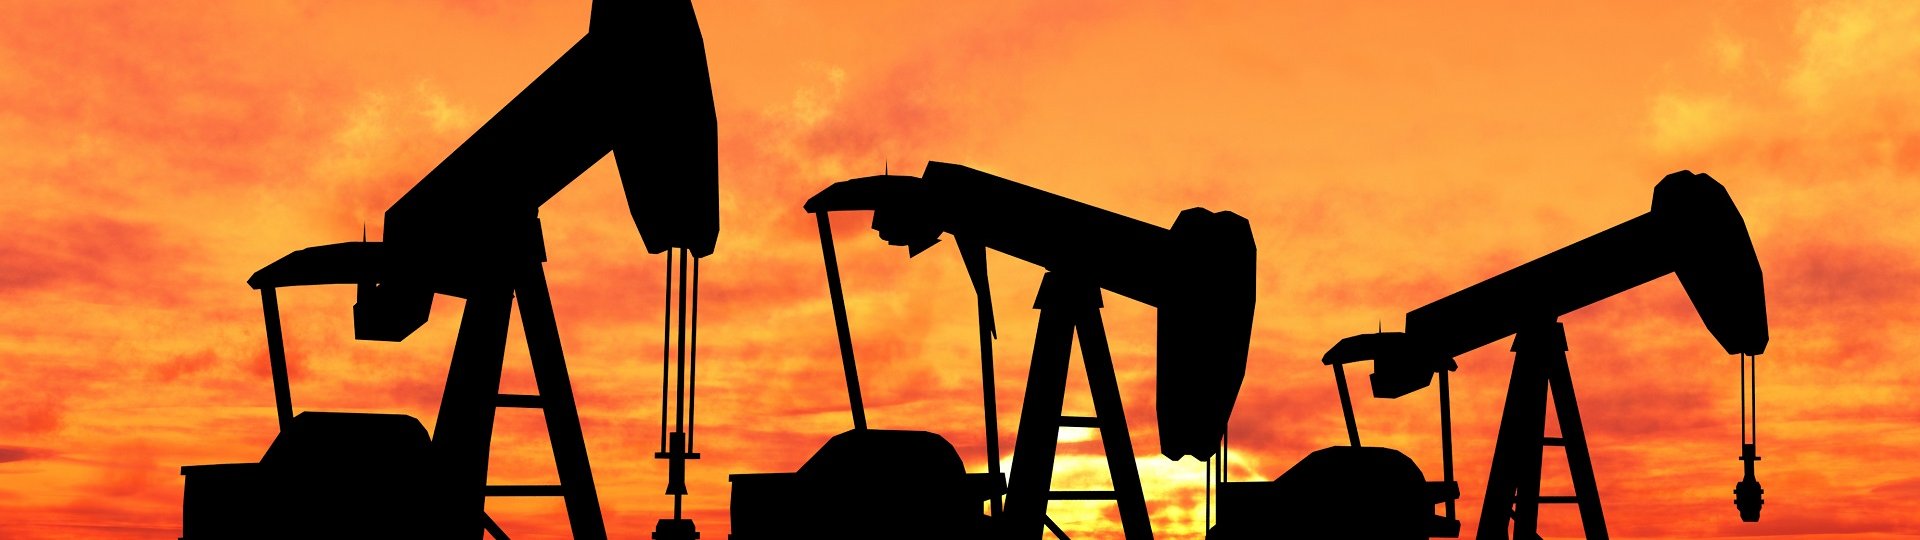 Ceny benzínu i nafty v České republice klesly